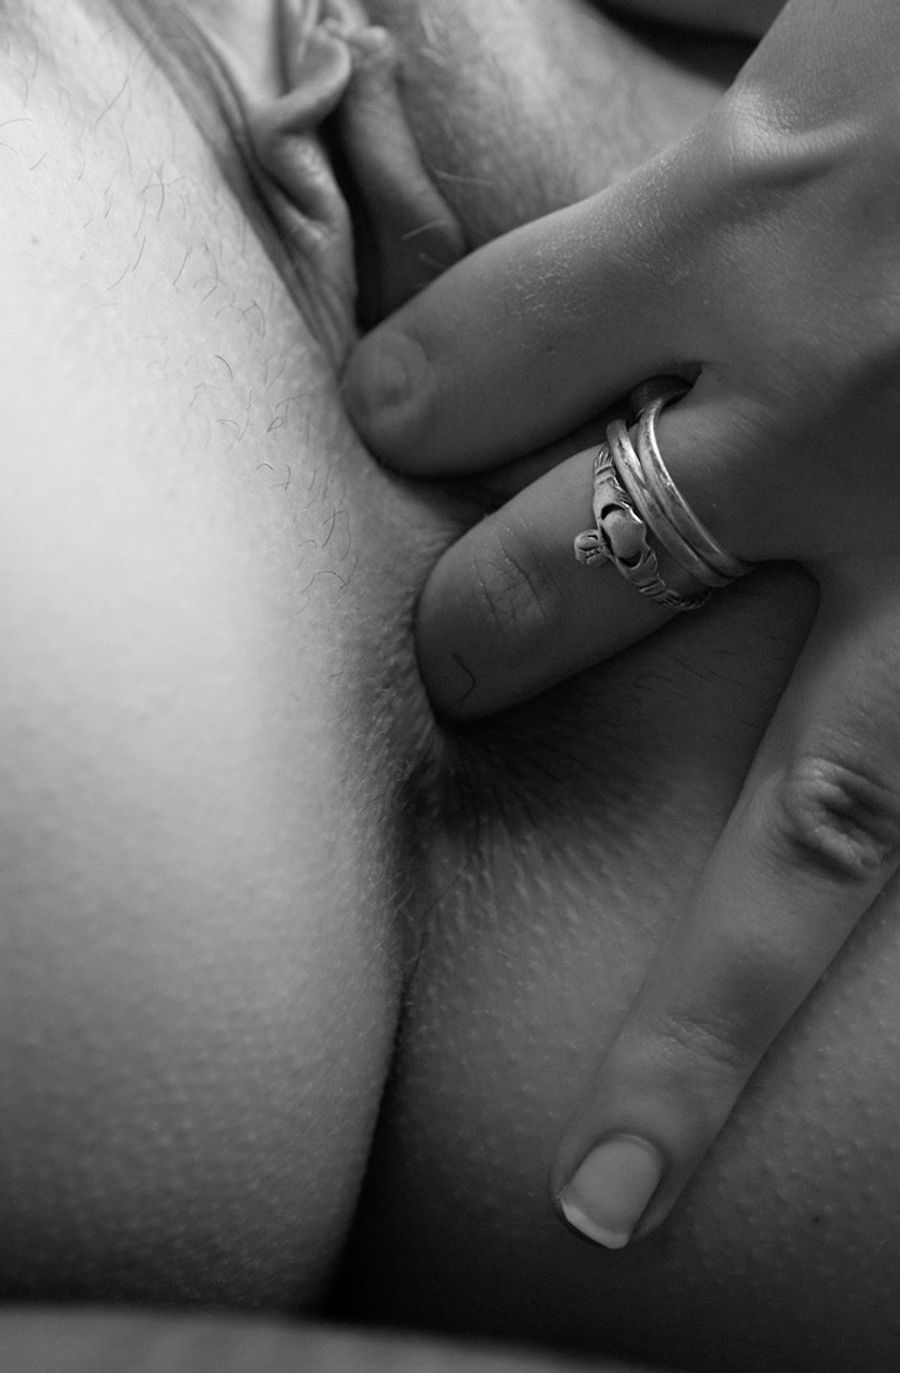 Black On White Hd Porn - black and white Photo Gallery: Porn Pics, Sex Photos & XXX GIFs